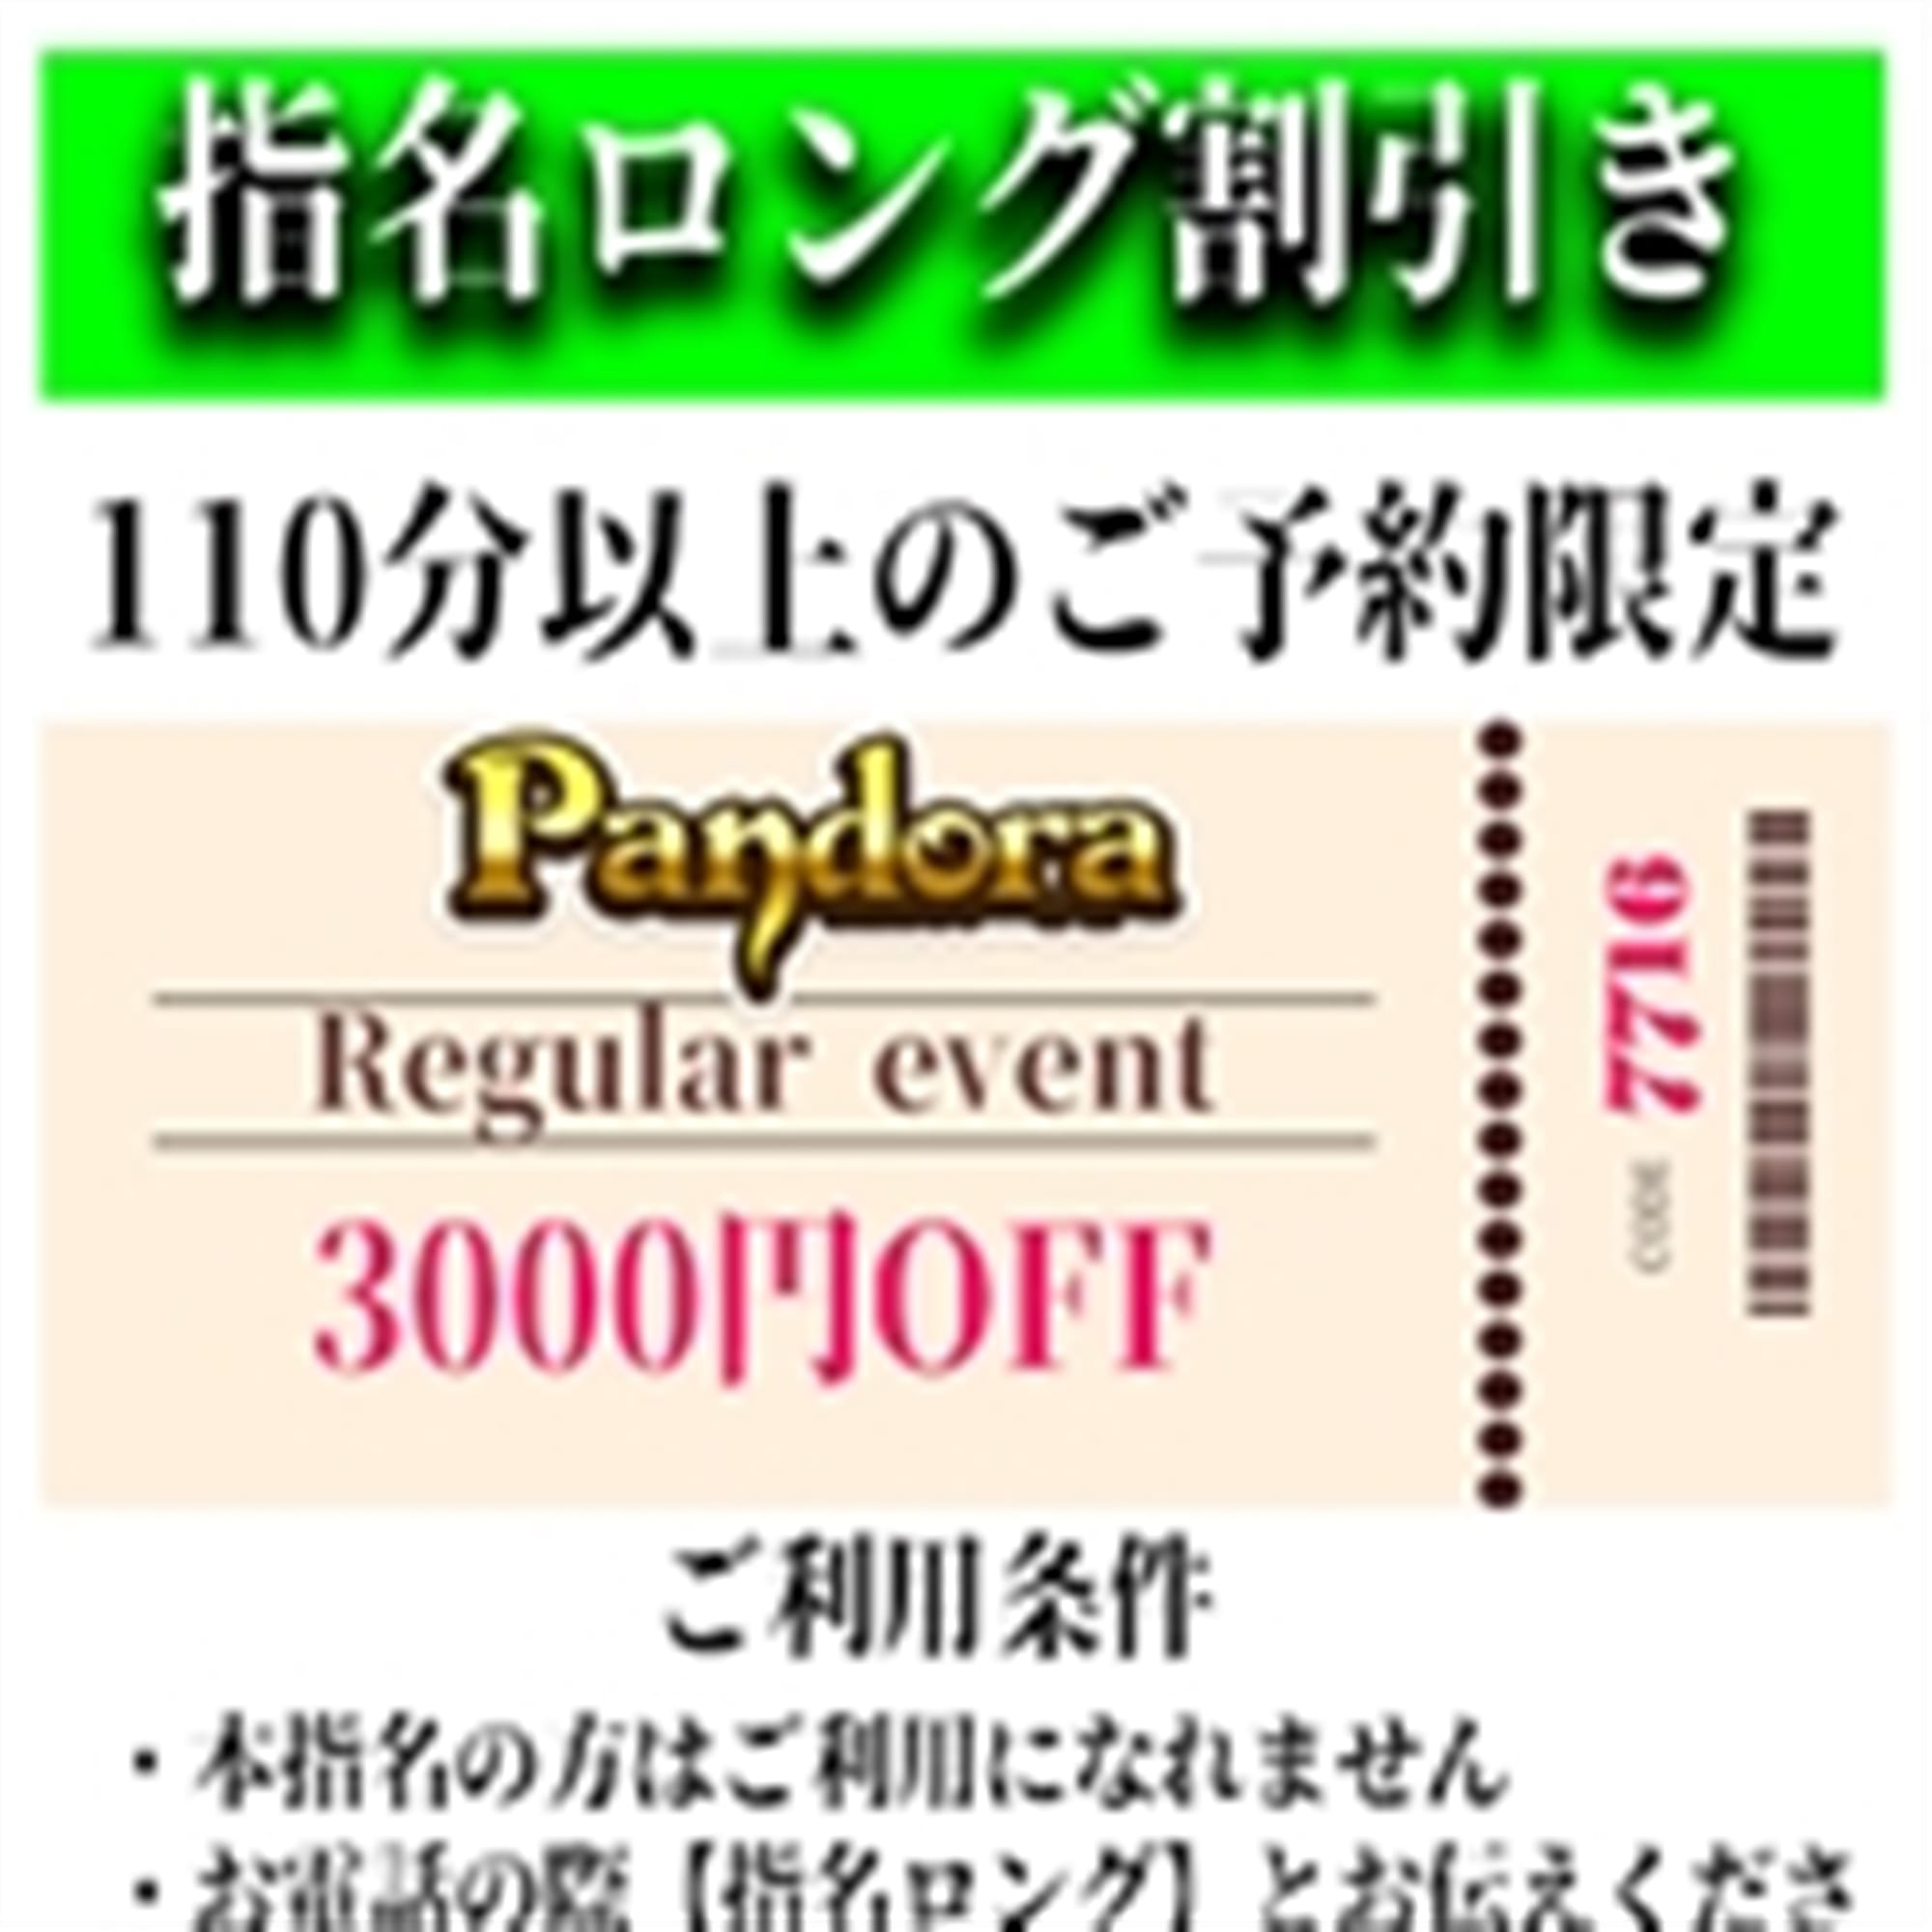 「ご指名のお客様も遊べるロングコース割引」04/16(火) 19:55 | Pandora(パンドラ)新潟のお得なニュース